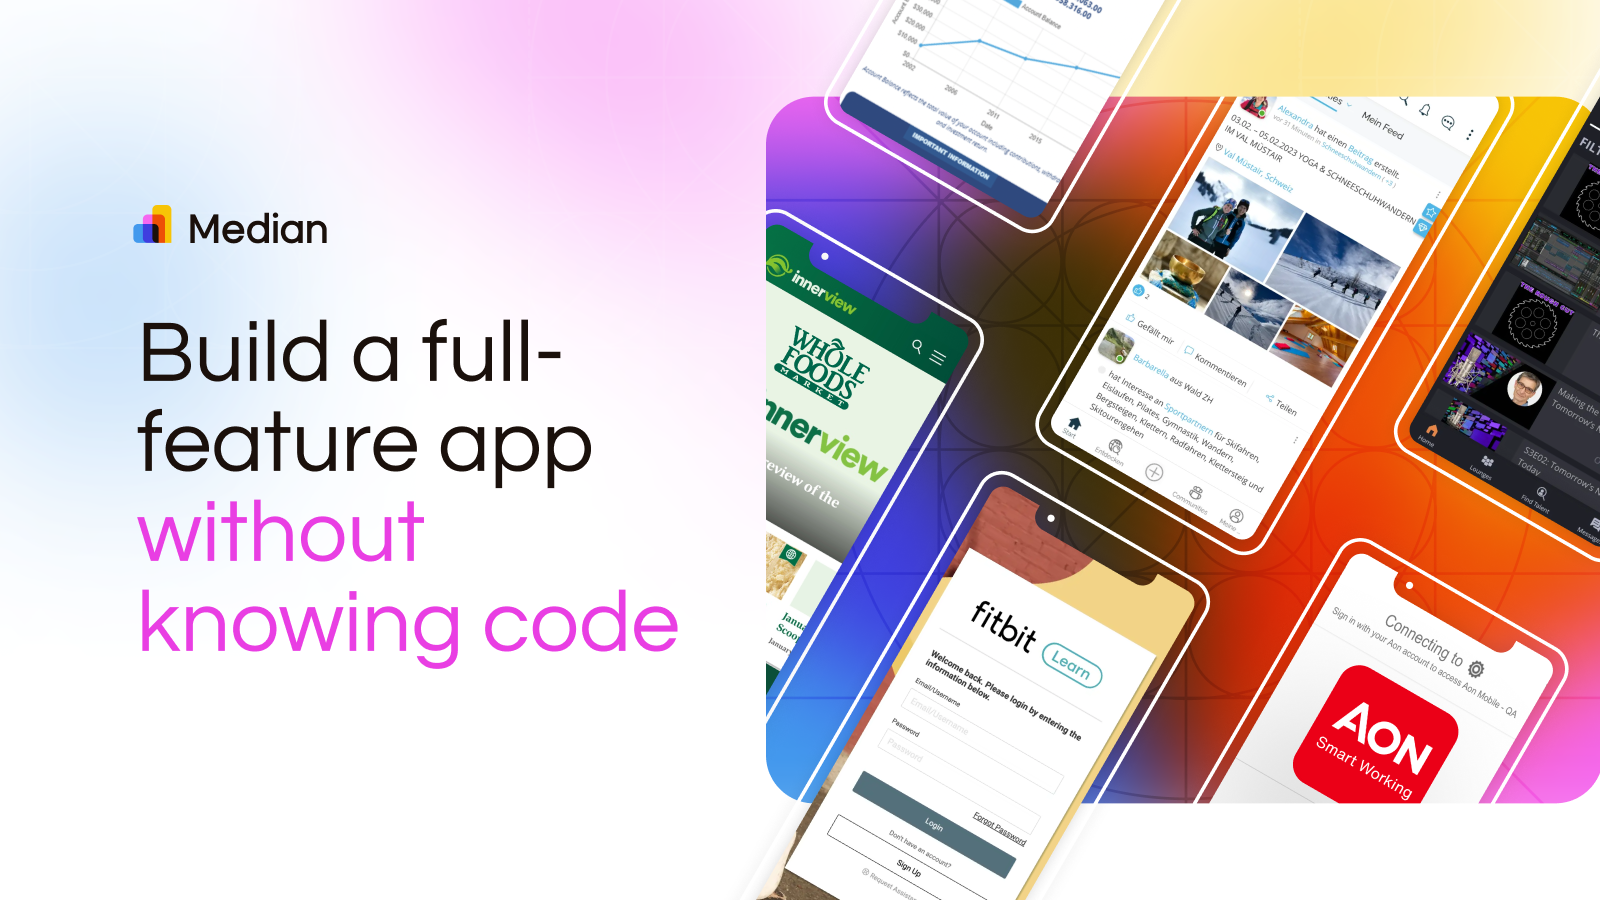 Verwenden Sie Median.co, um eine voll funktionsfähige App zu erstellen, ohne Code zu kennen